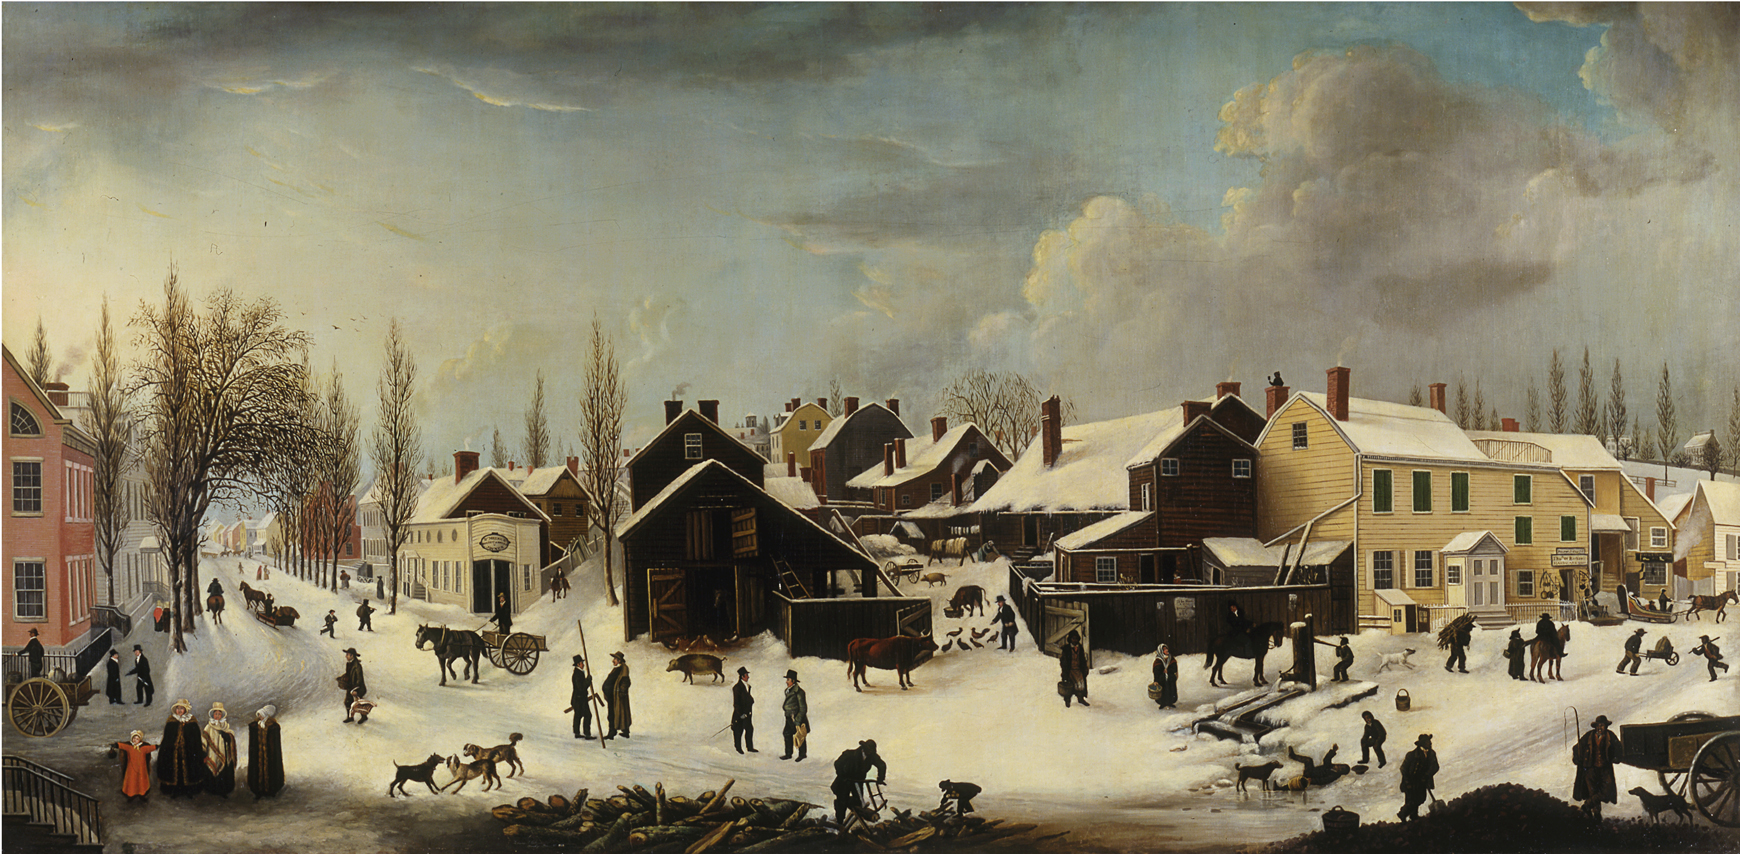 Louisa Ann Coleman, Escena de invierno en Brooklyn, Nueva York, 1817-1820, 1853. Museo de la ciudad de Nueva York. 53.2.